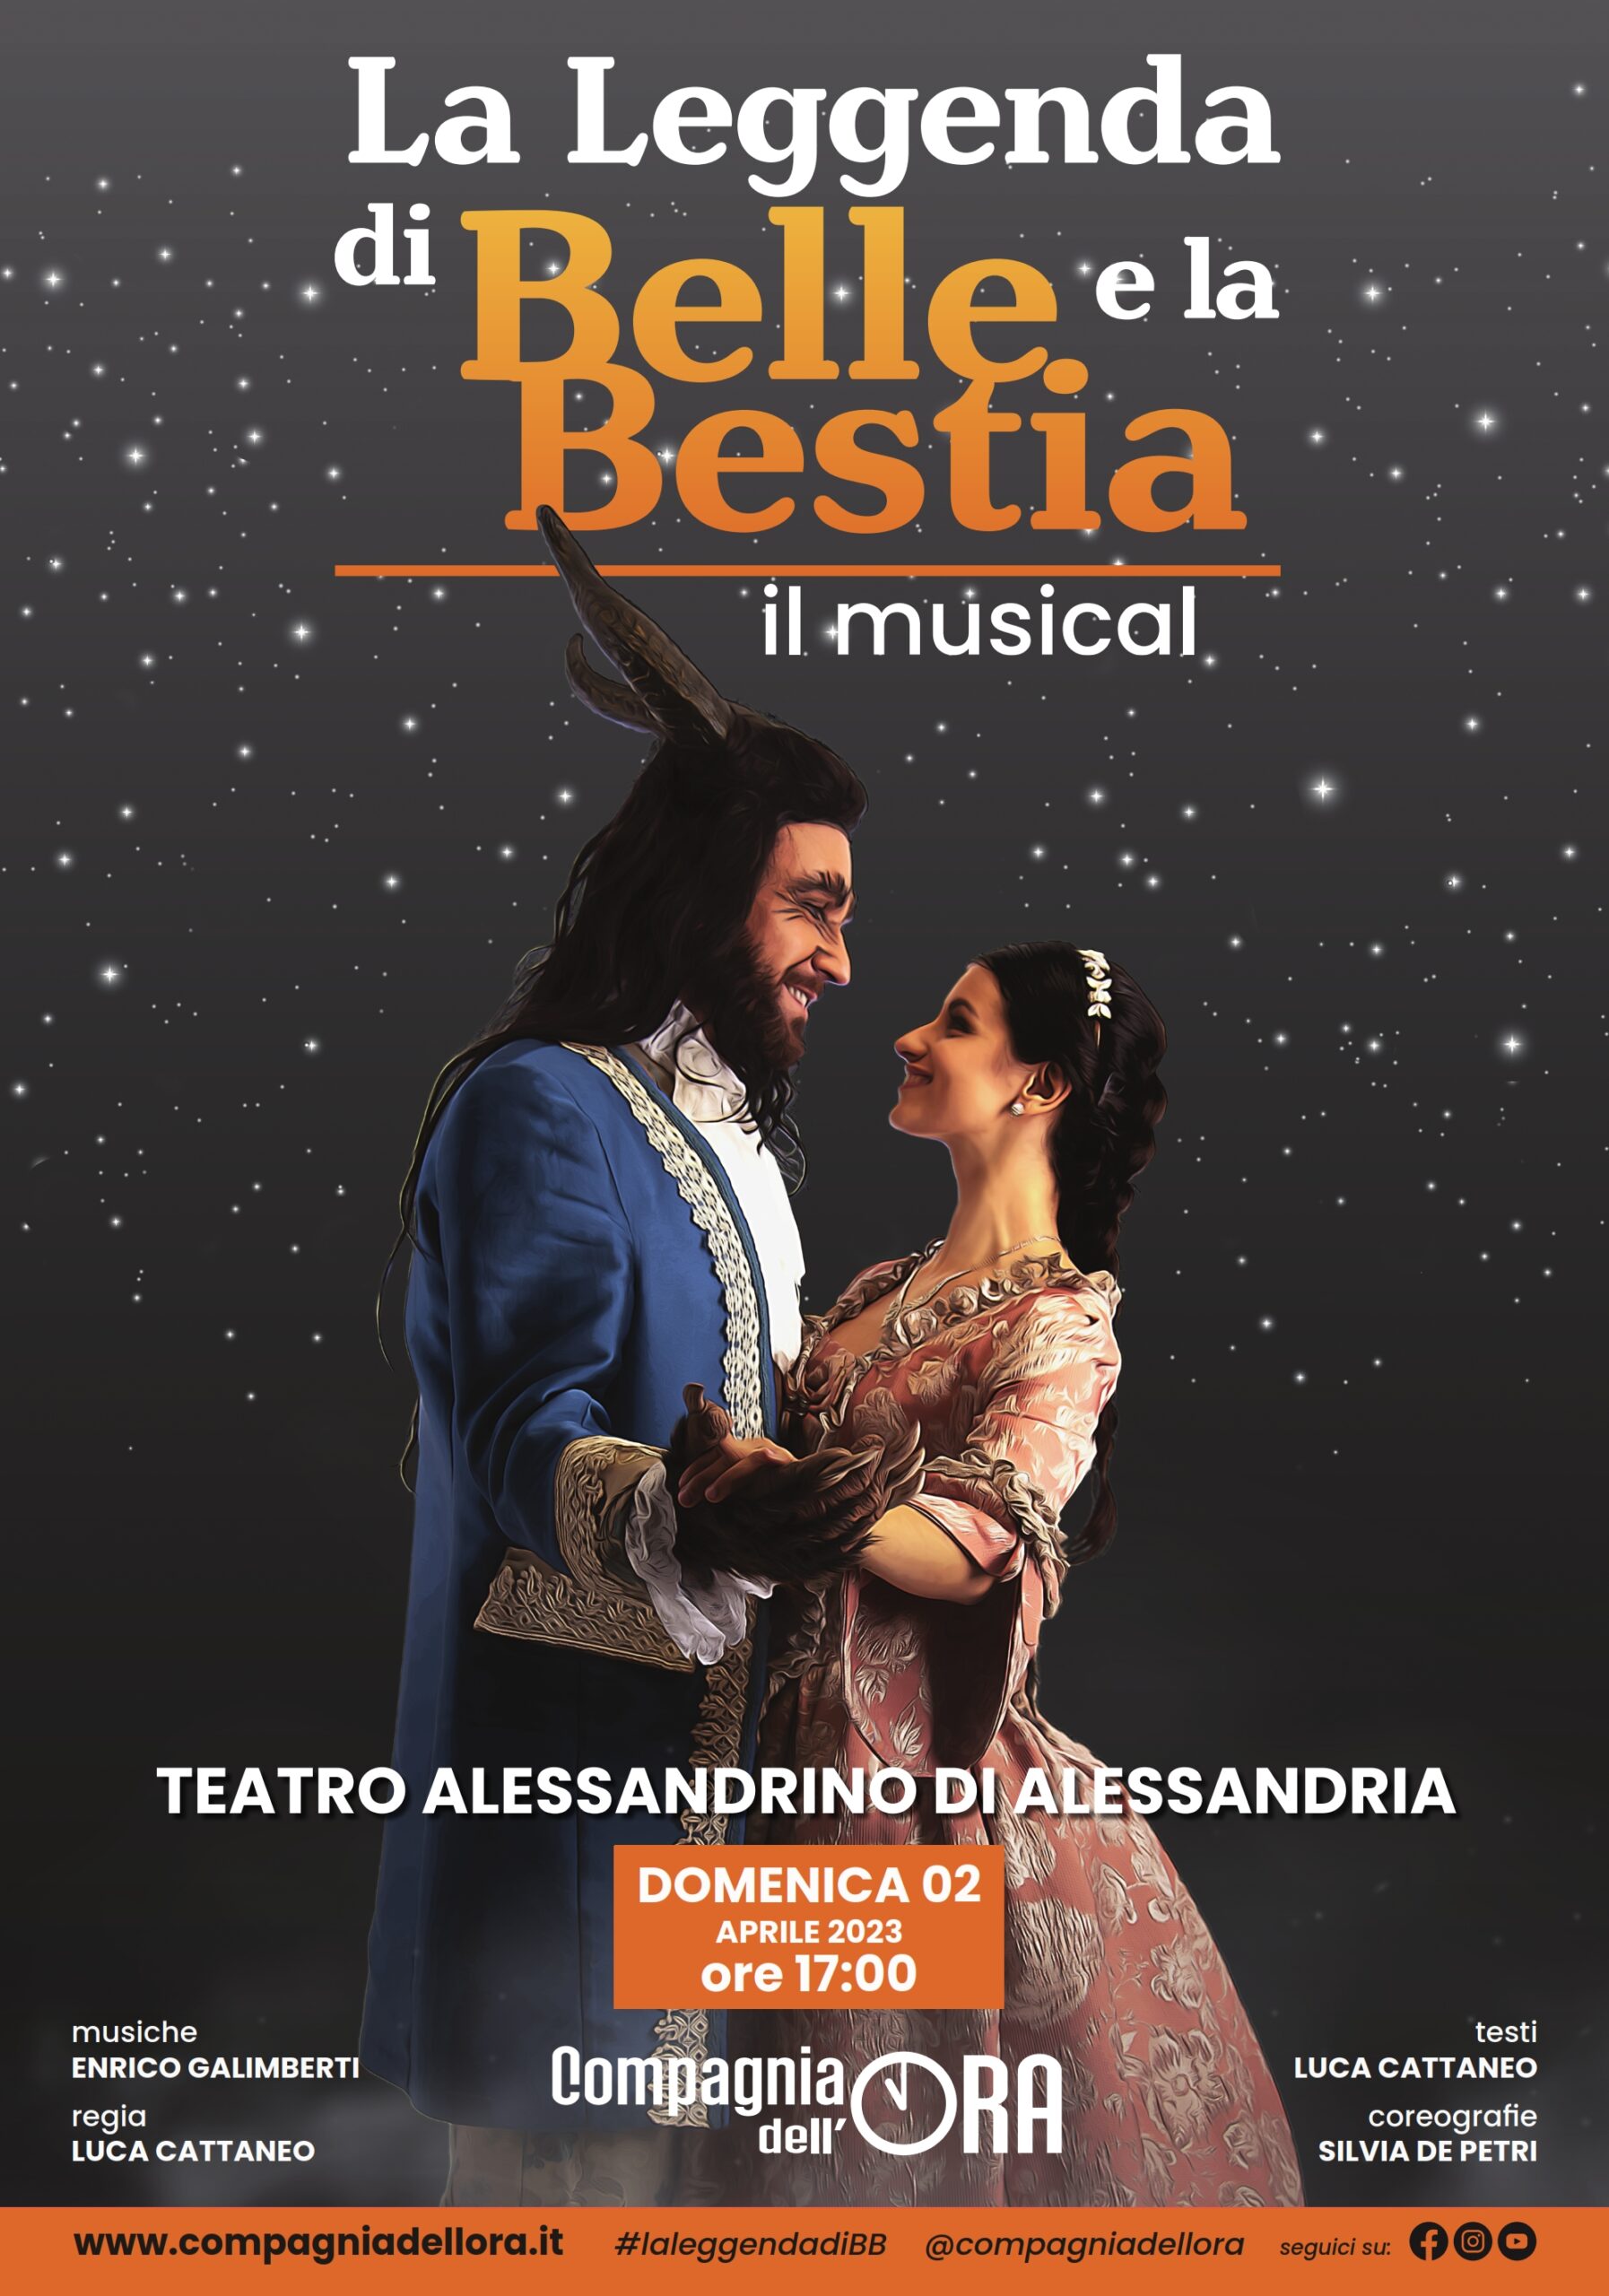 La Leggenda di Belle e la Bestia – IL MUSICAL 2 APRILE 2023 - domenica ore 17.00